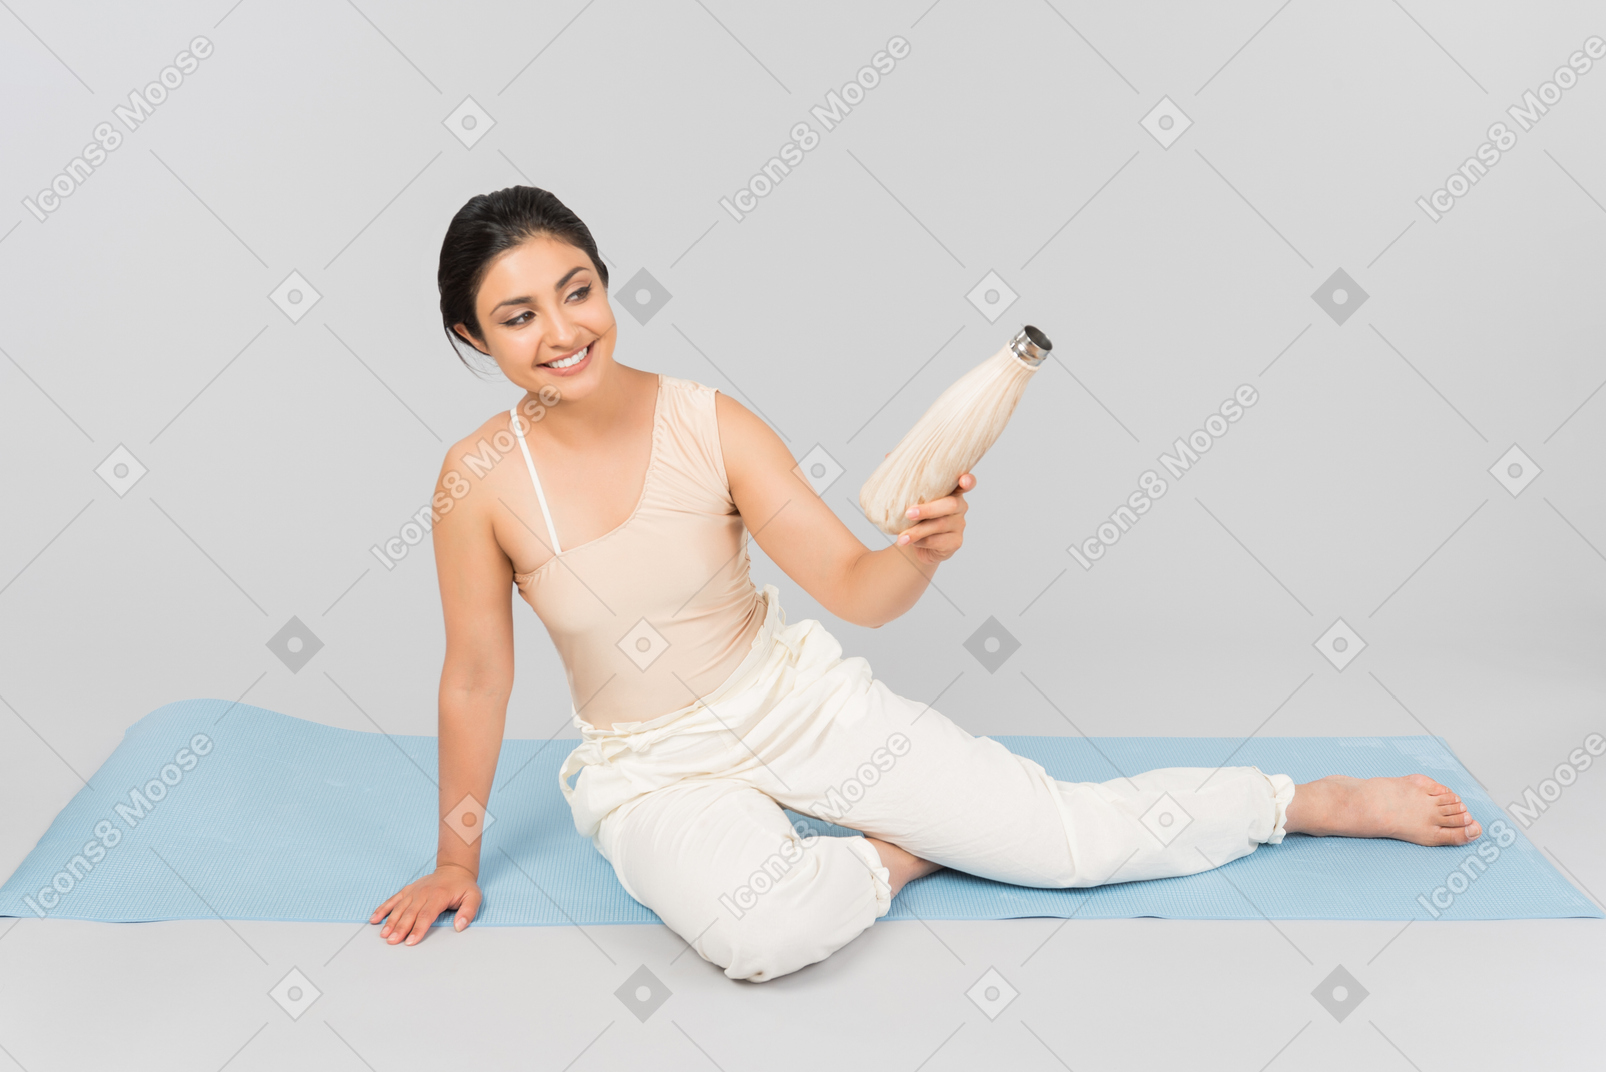 Junge indische frau, die auf yogamatte sitzt und sportflasche hält